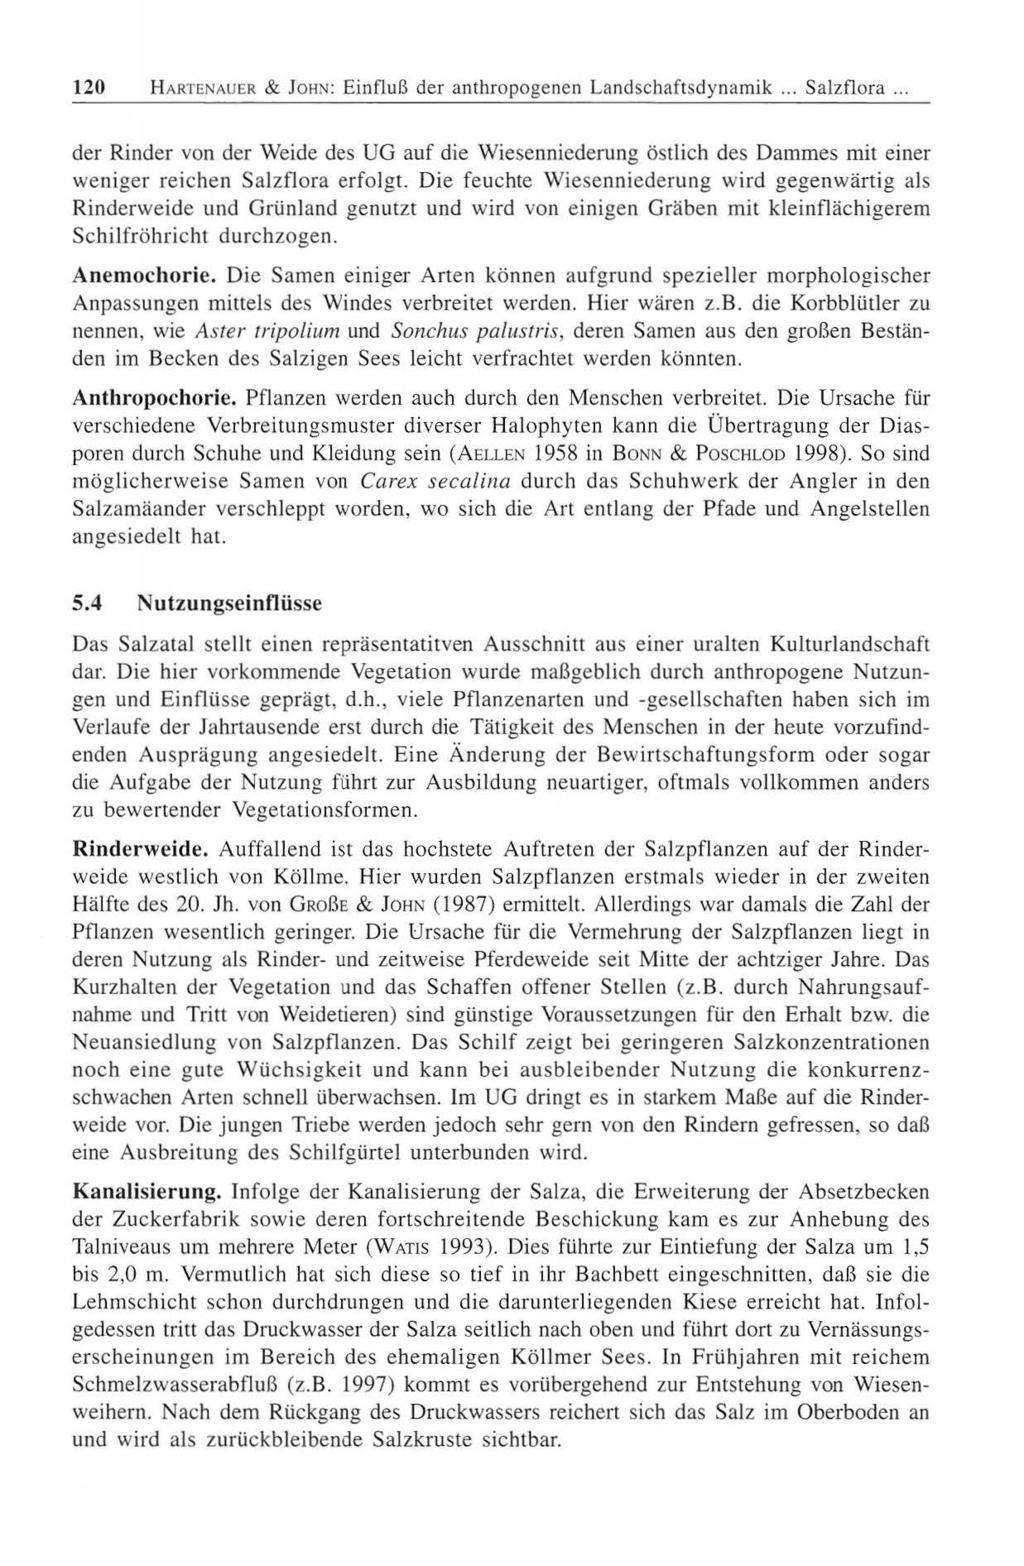 120 HARTENAUER & JoHN: Einfluß der anthropogenen Landschaftsdynamik... Salzflora.